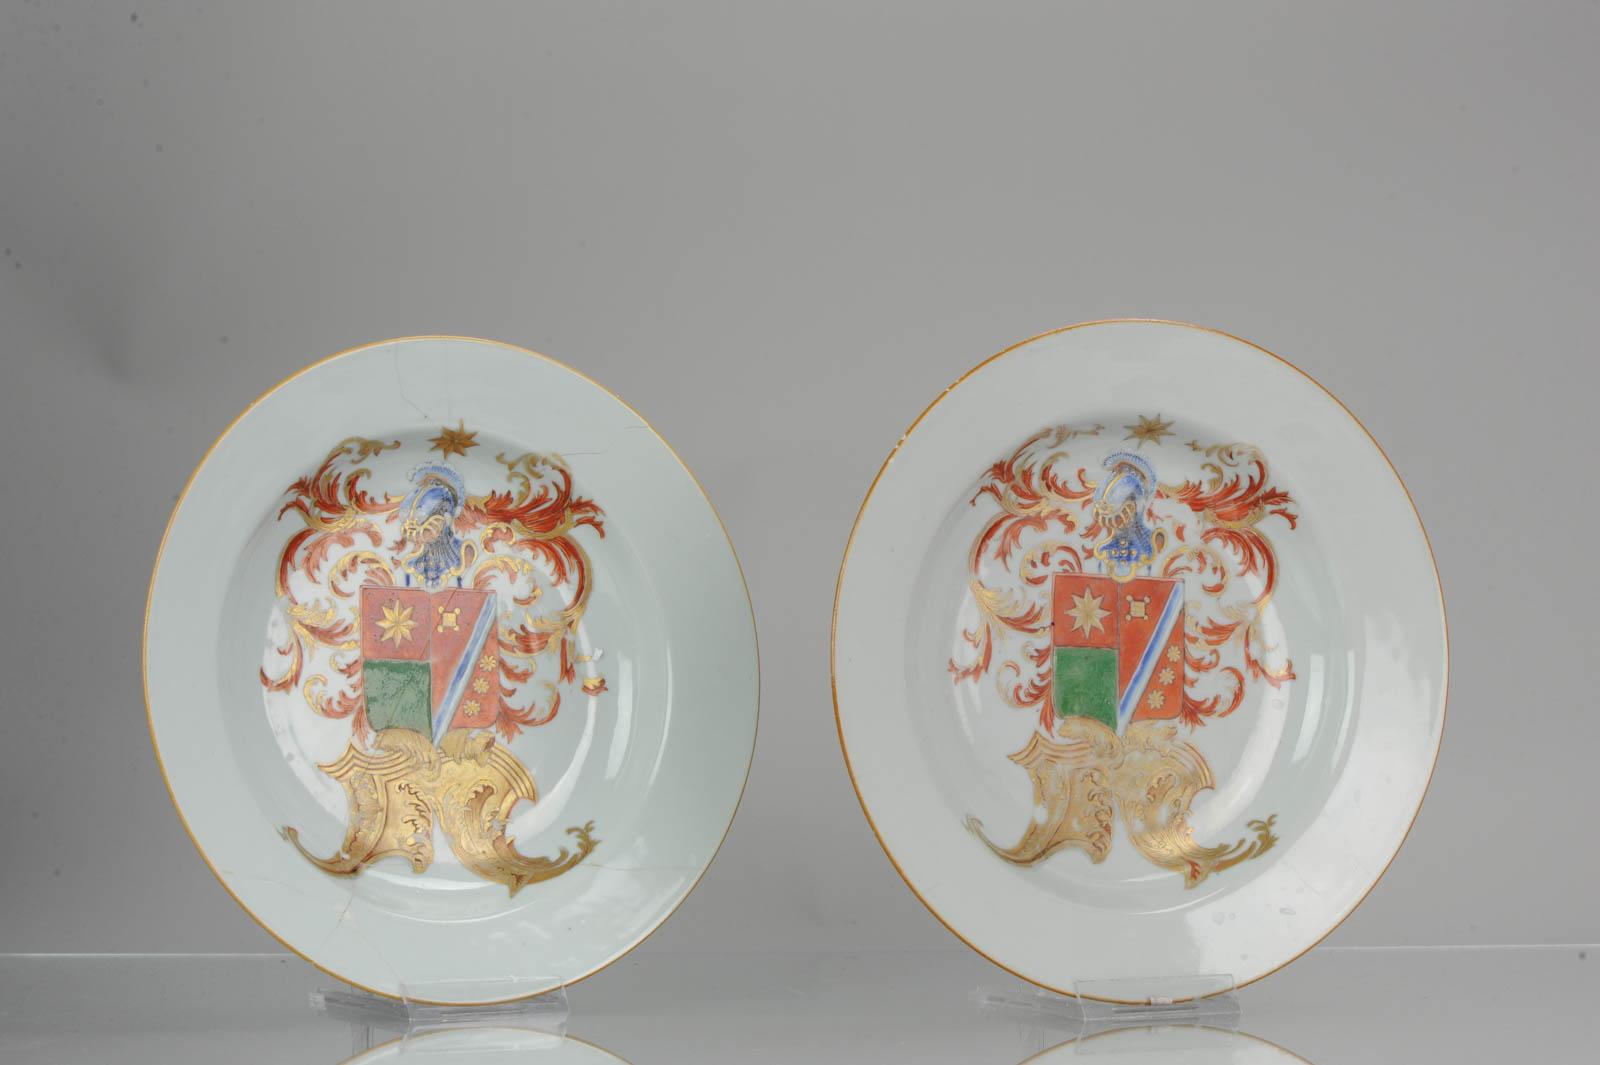 Antique Plate Armorial Fencai Porcelain Famille Rose China Qianlong, '1736-1795' 6